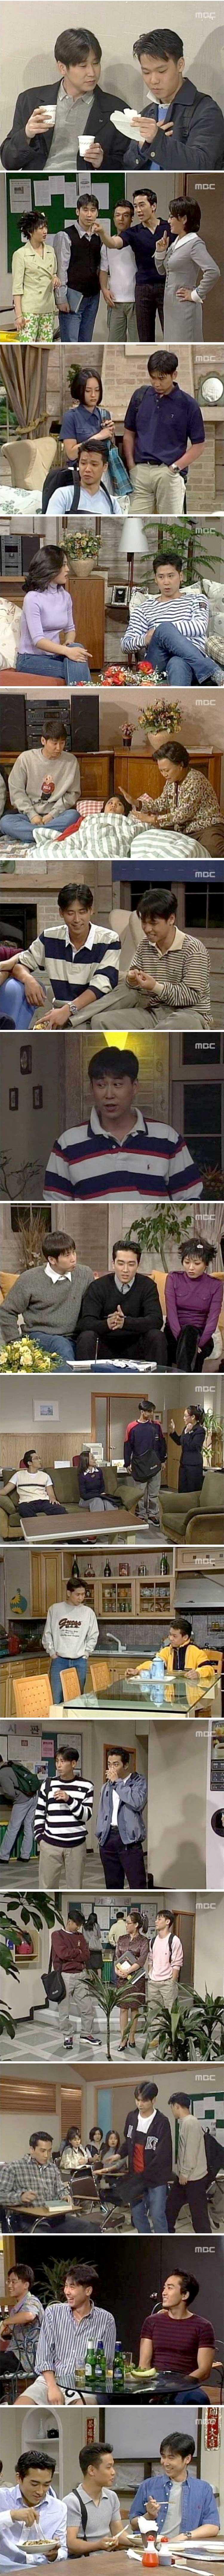 MBC 시트콤 남자셋 여자셋 90년대 대학생 패션.jpg